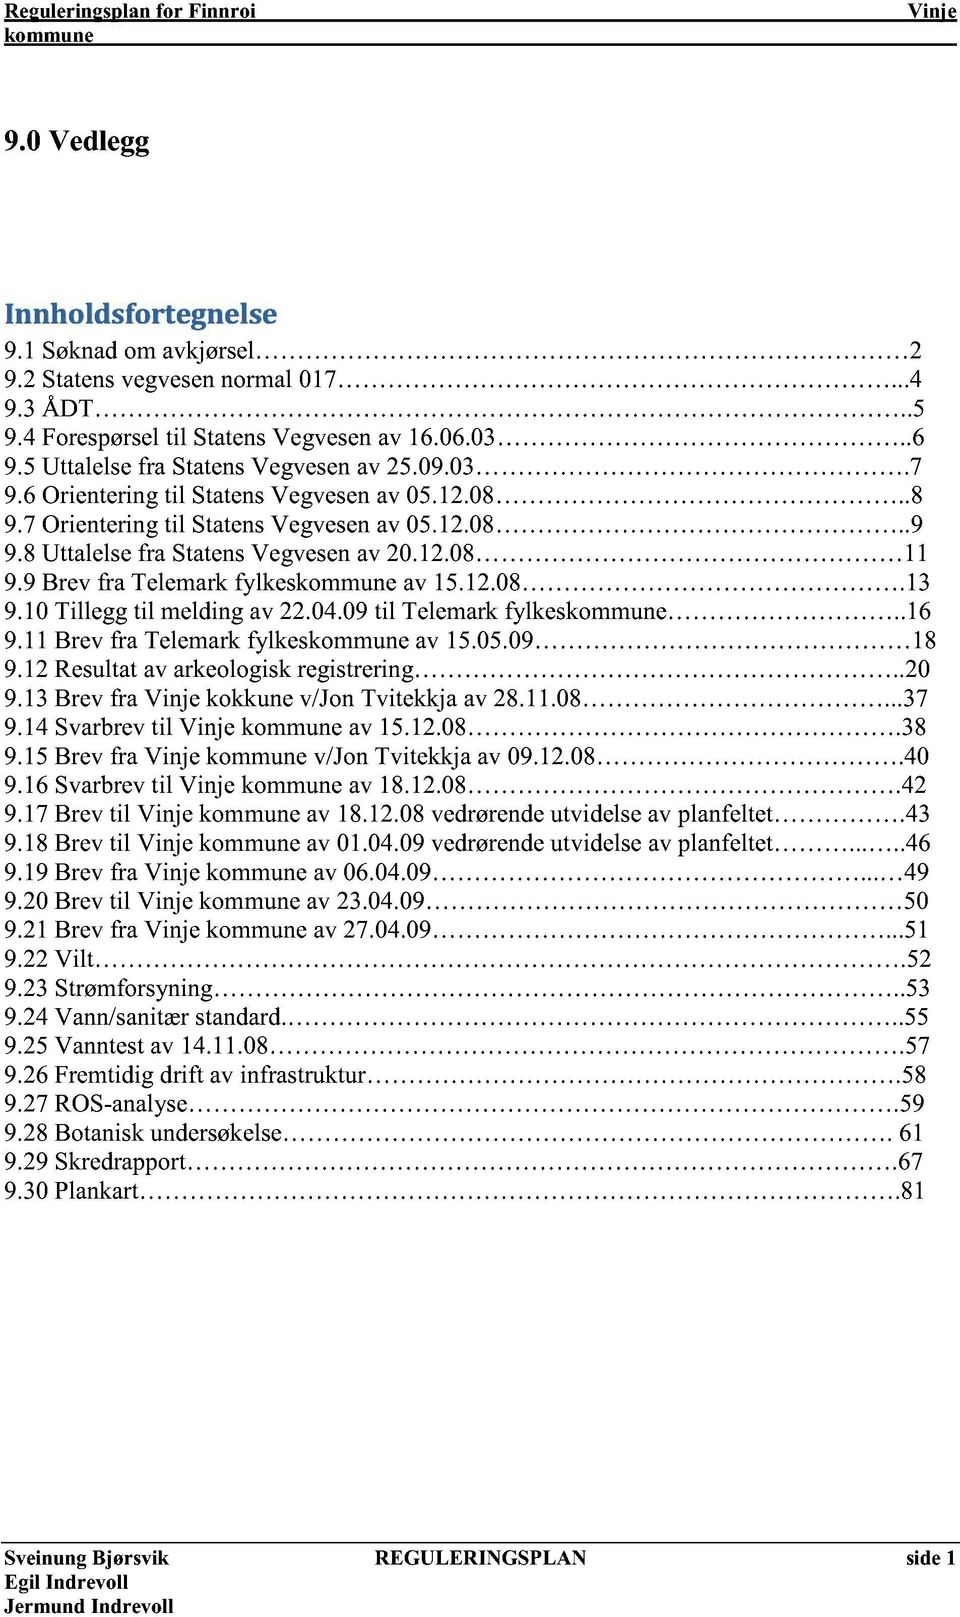 12.08.13 9.10 Tillegg til melding av 22.04.09 til Telemark fylkes.. 16 9.11 Brev fra Telemark fylkeskomm une av 15.05.09 18 9.12 Resultat av ar keologisk registrering..20 9.